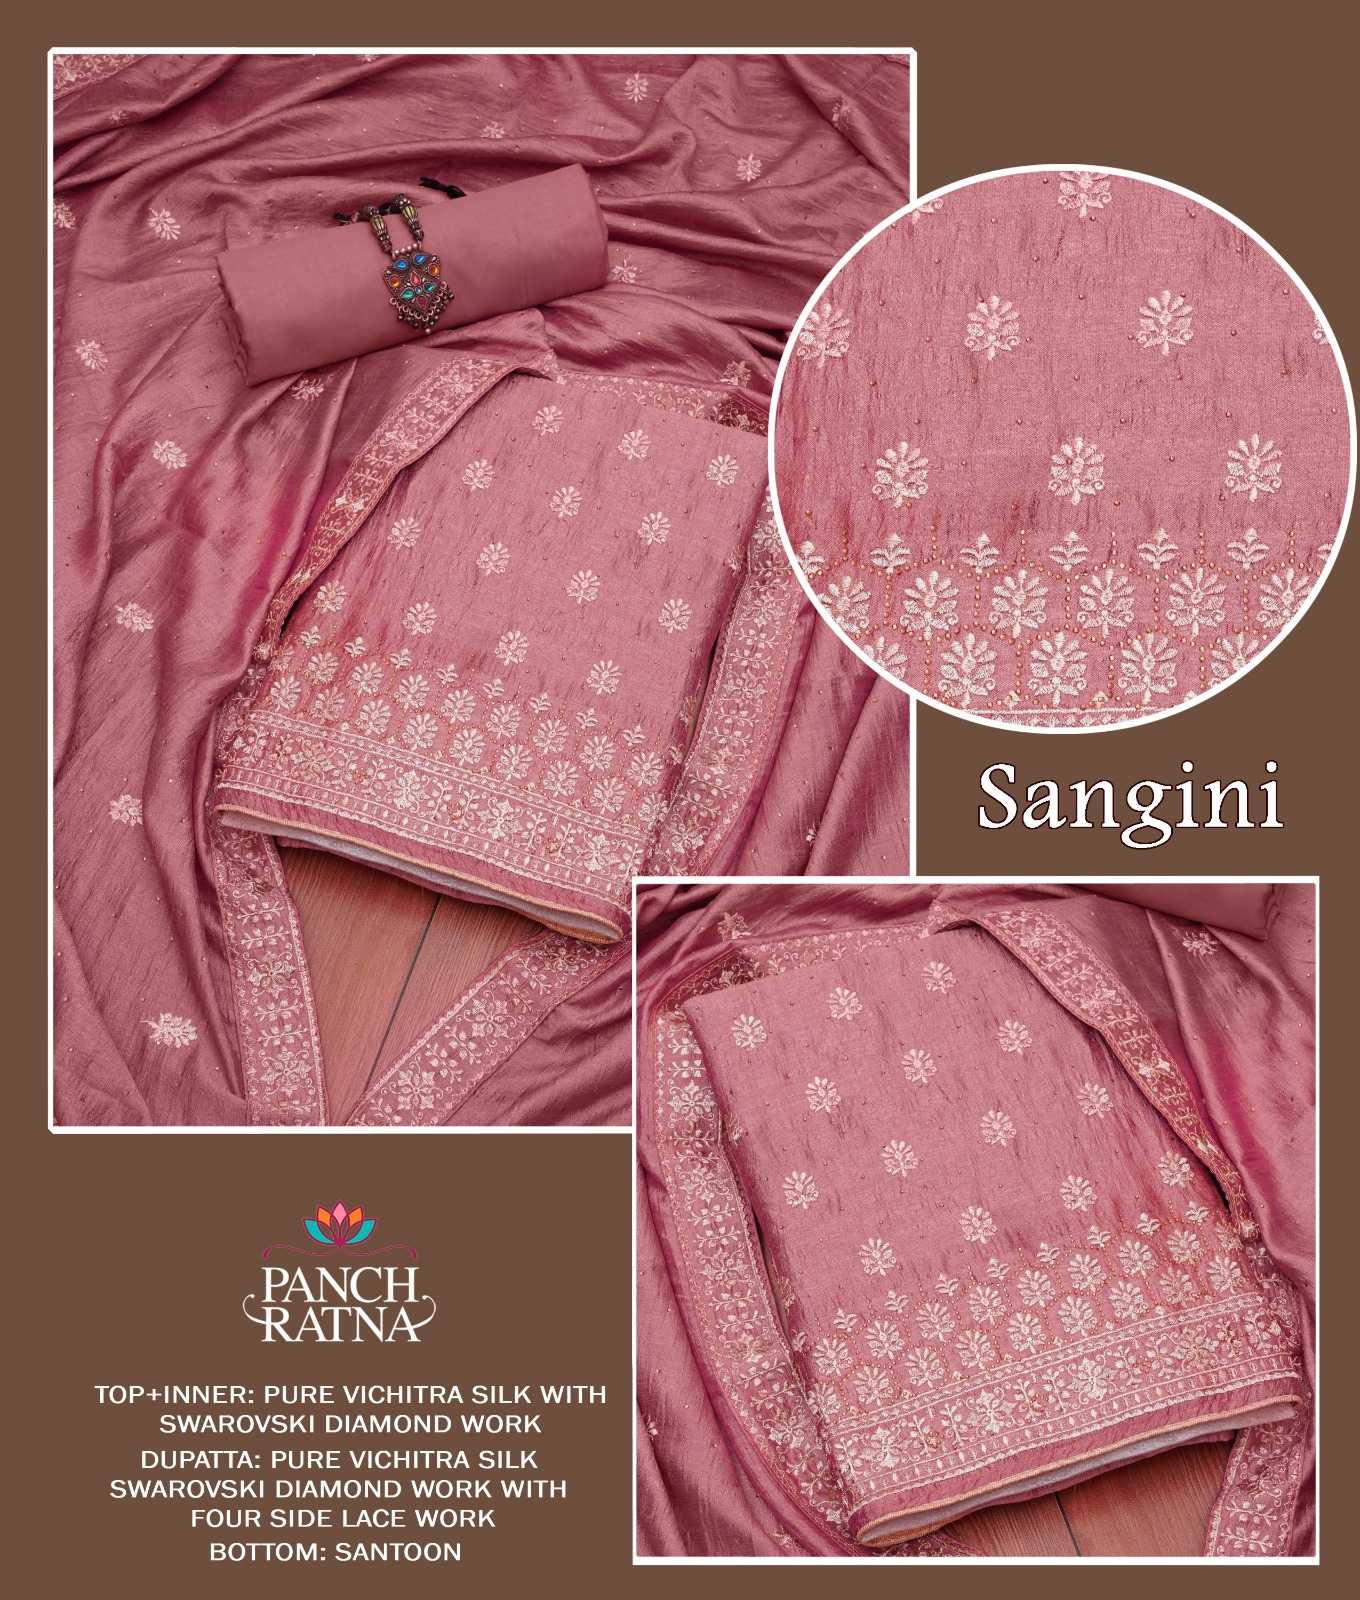 panch ratna sangini designer diamond work dress material